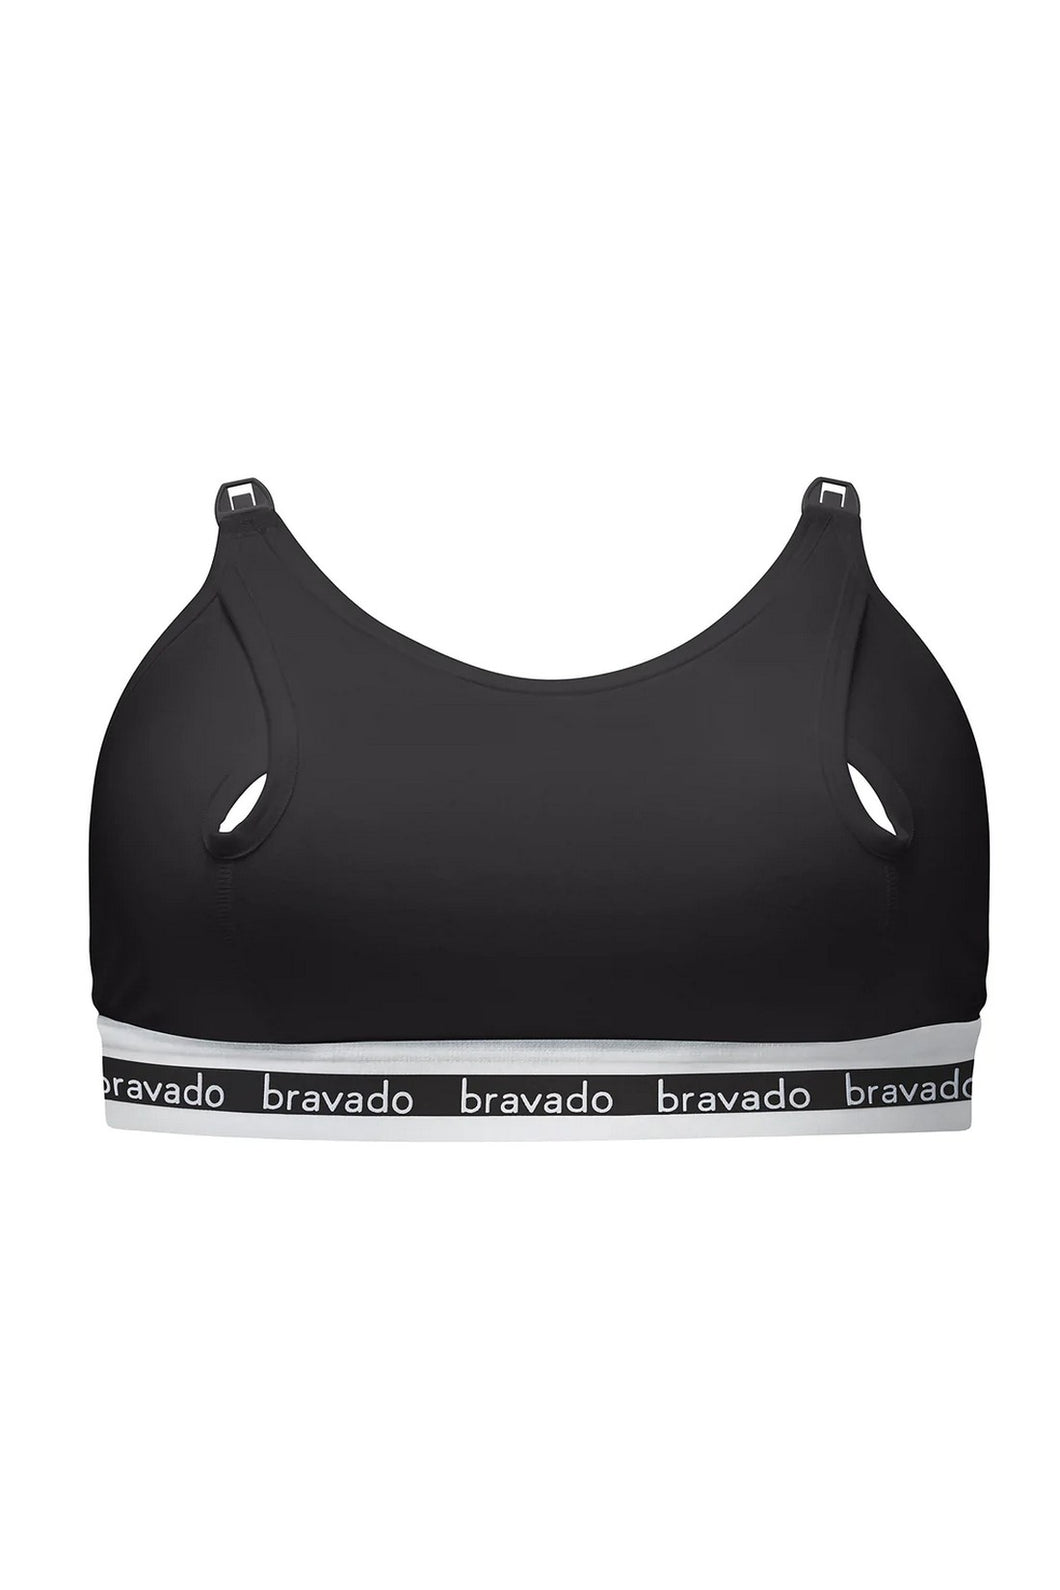 Bravado Designs Clip And Pump HandsFree Nursing Bra Accessory  Sustainable  Black  1